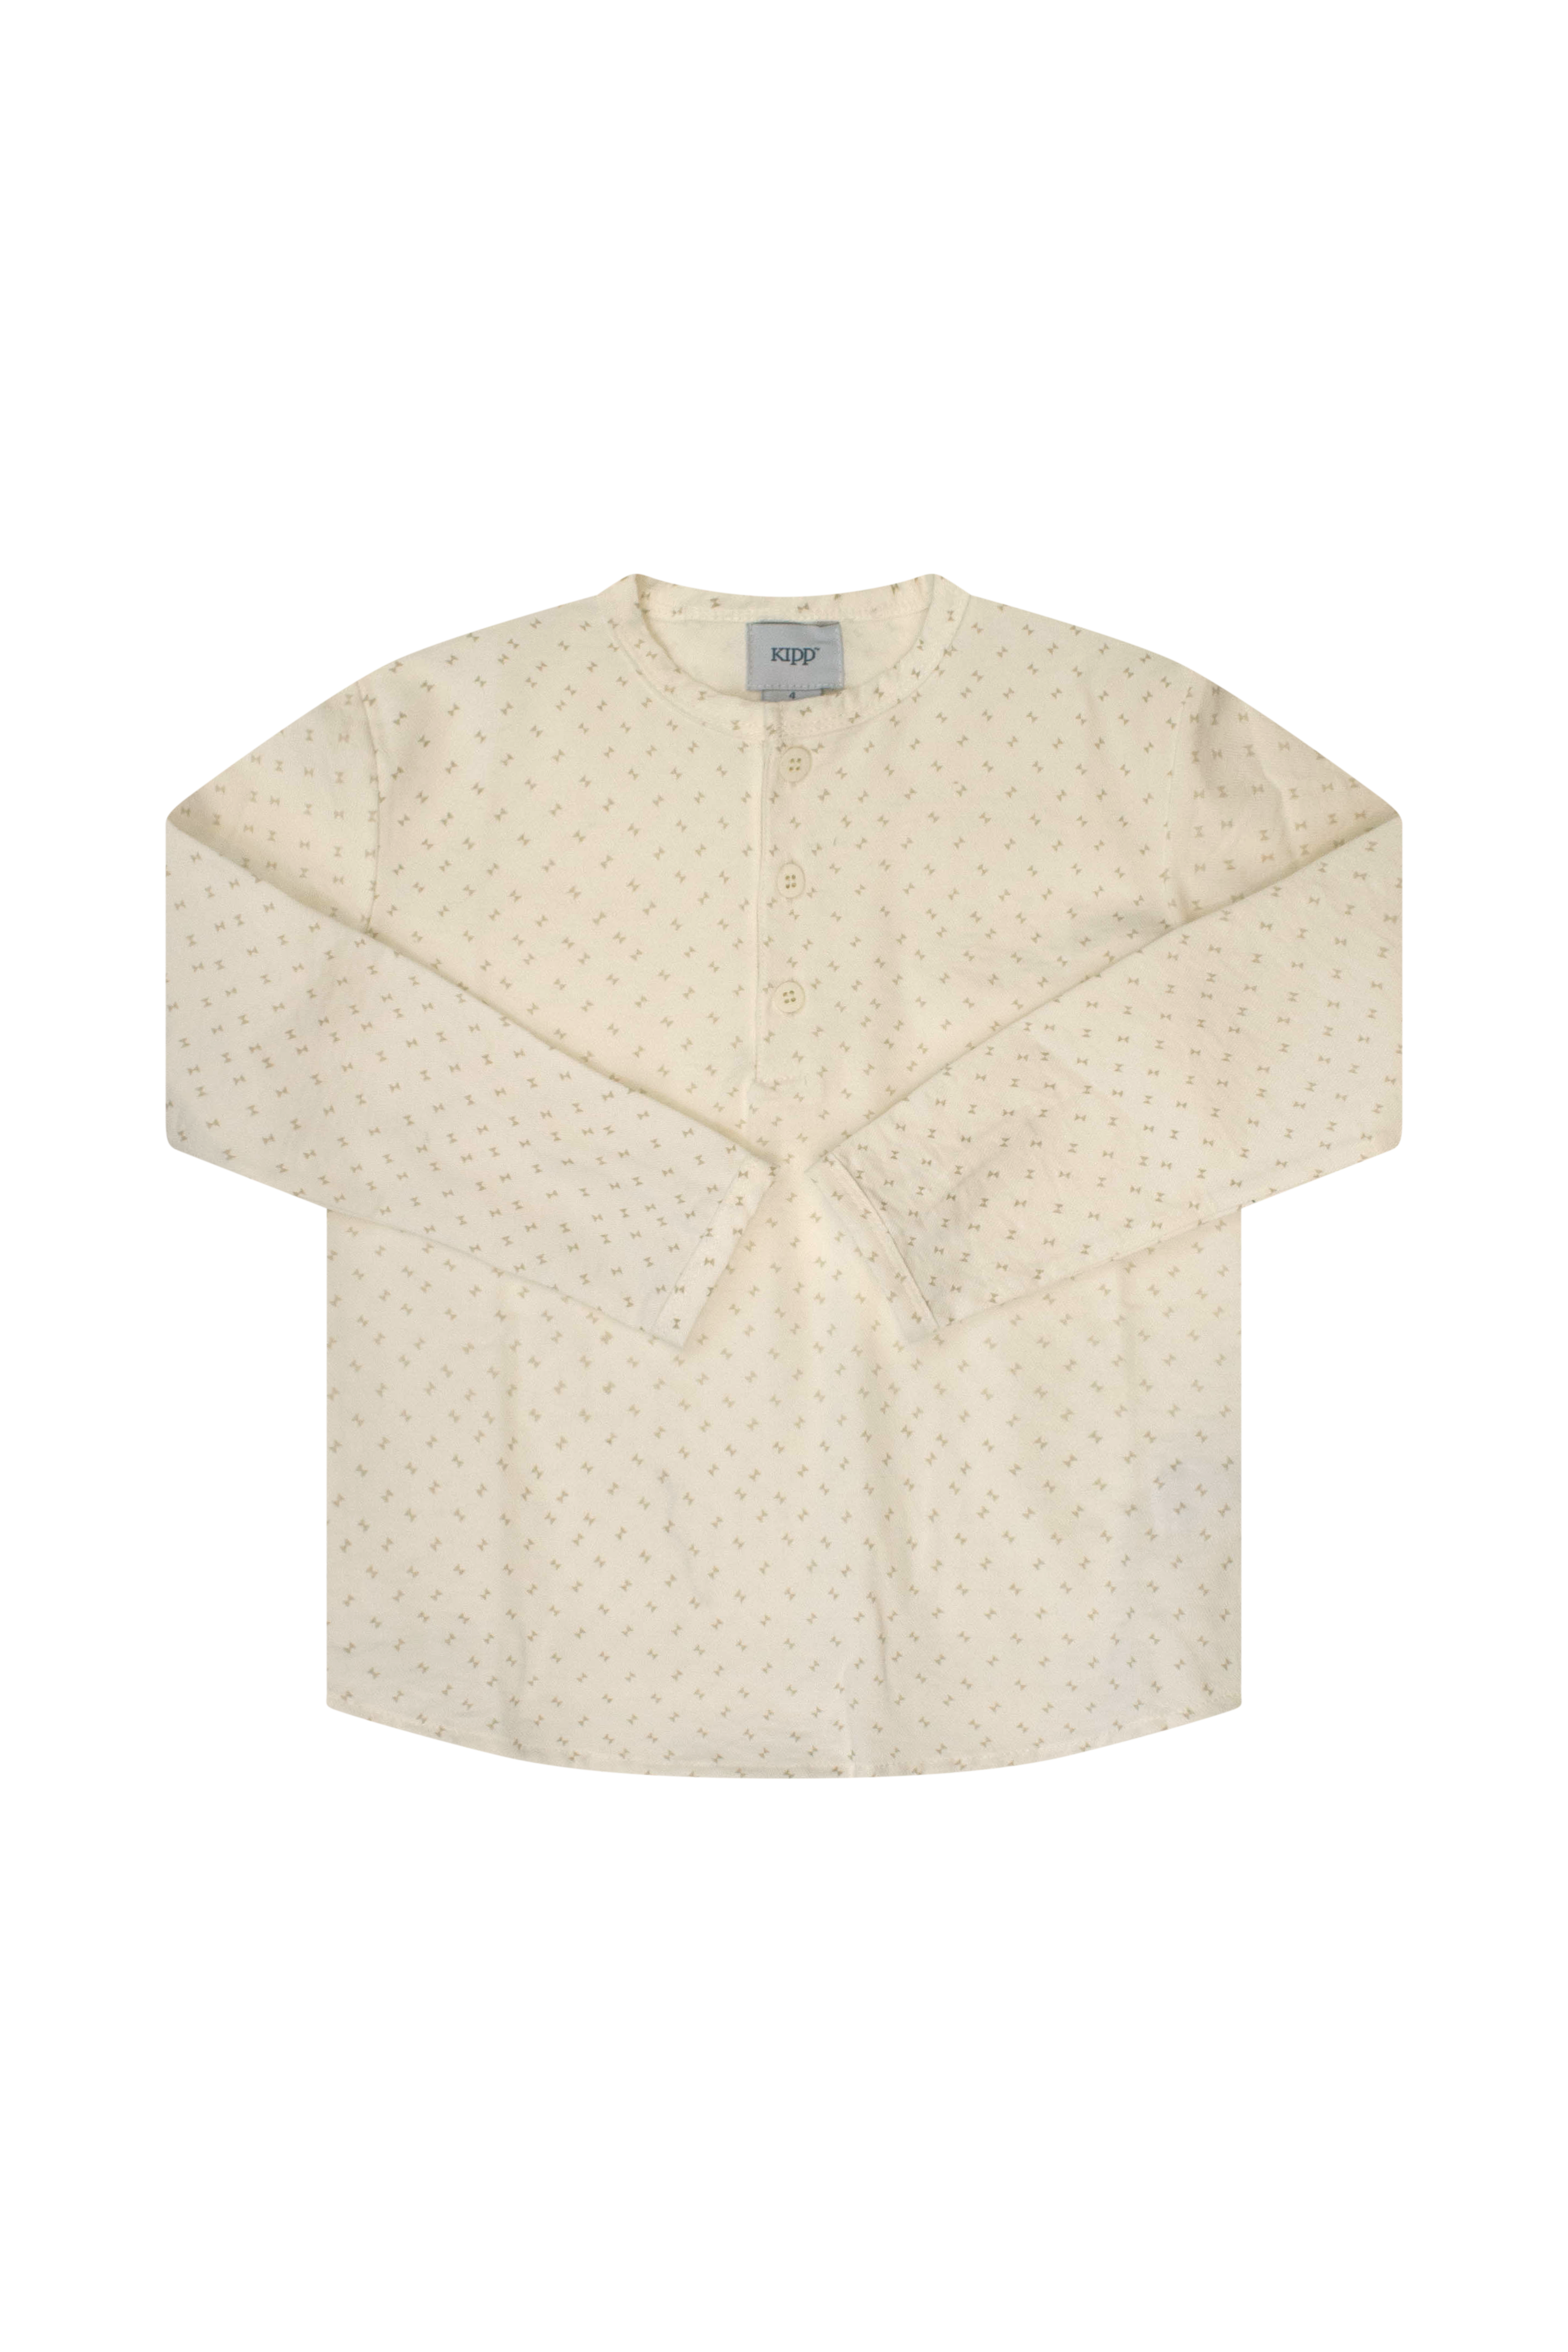 Kipp White Twill Shirt